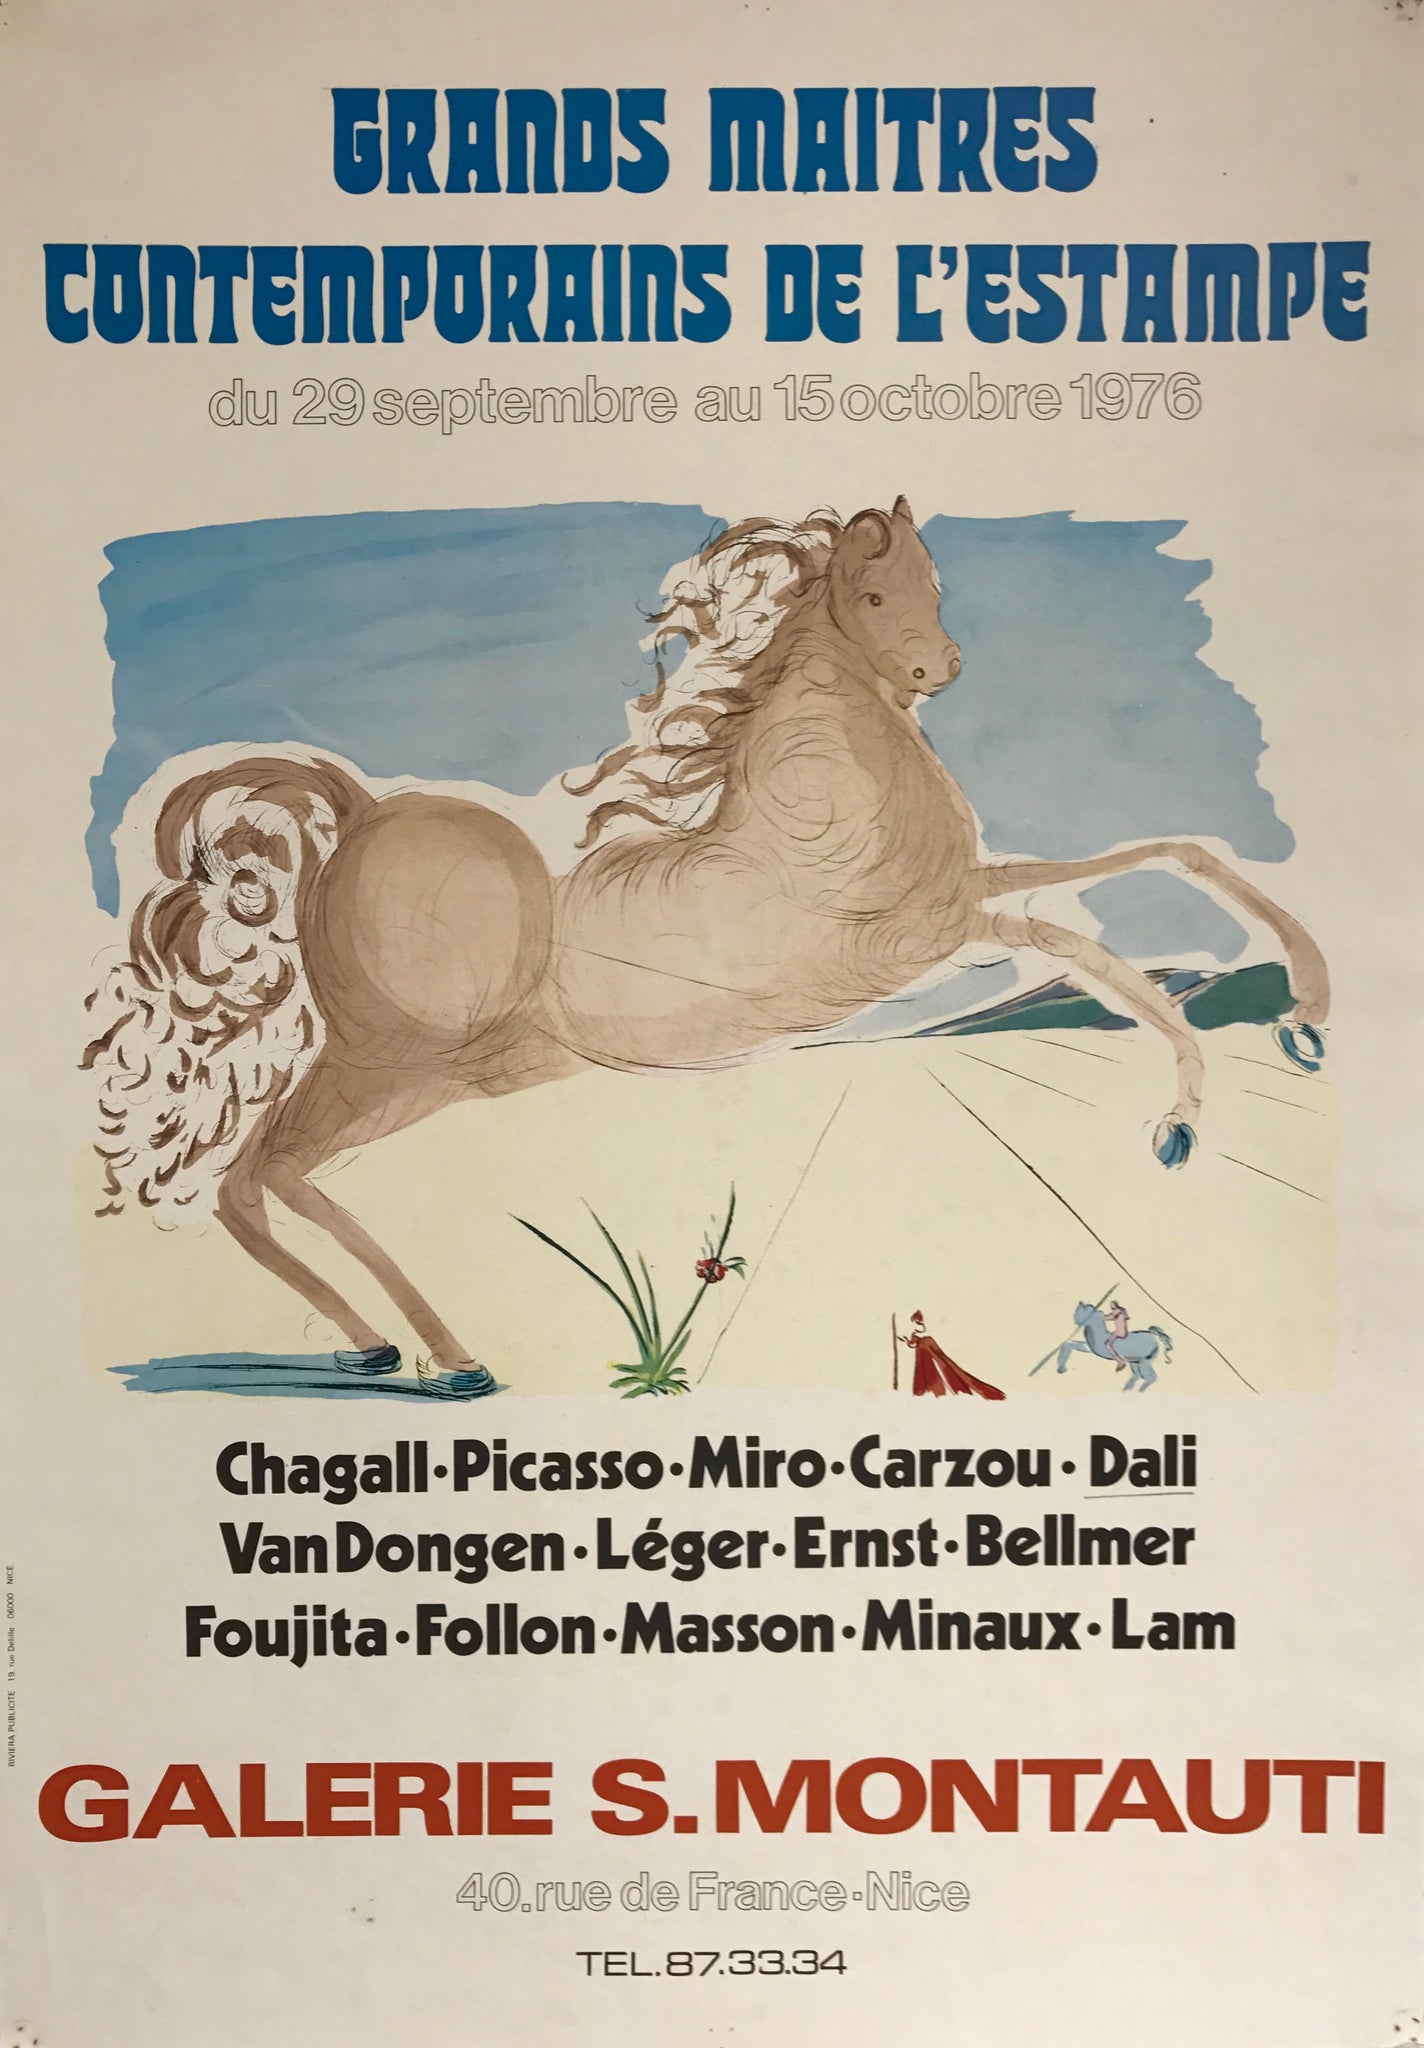 Affiche Galerie S.Montauti Par Salvador Dali, 1976  Illustration de Dali pour une exposition à la galerie S.Montauti avec les grands maîtres contemporains de l'estampe, 1976